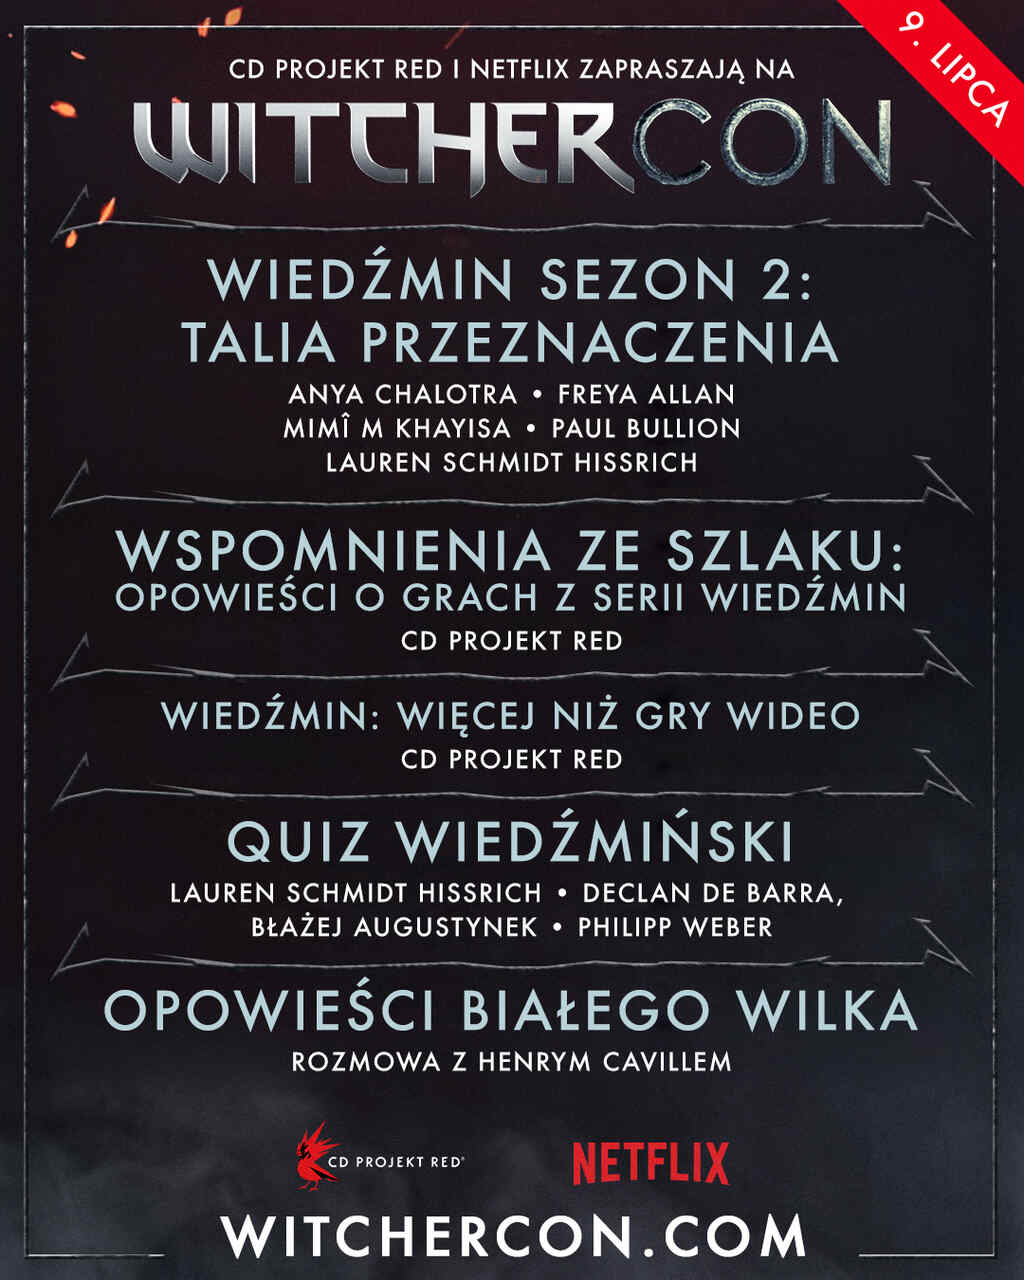 Netflix WitcherCon